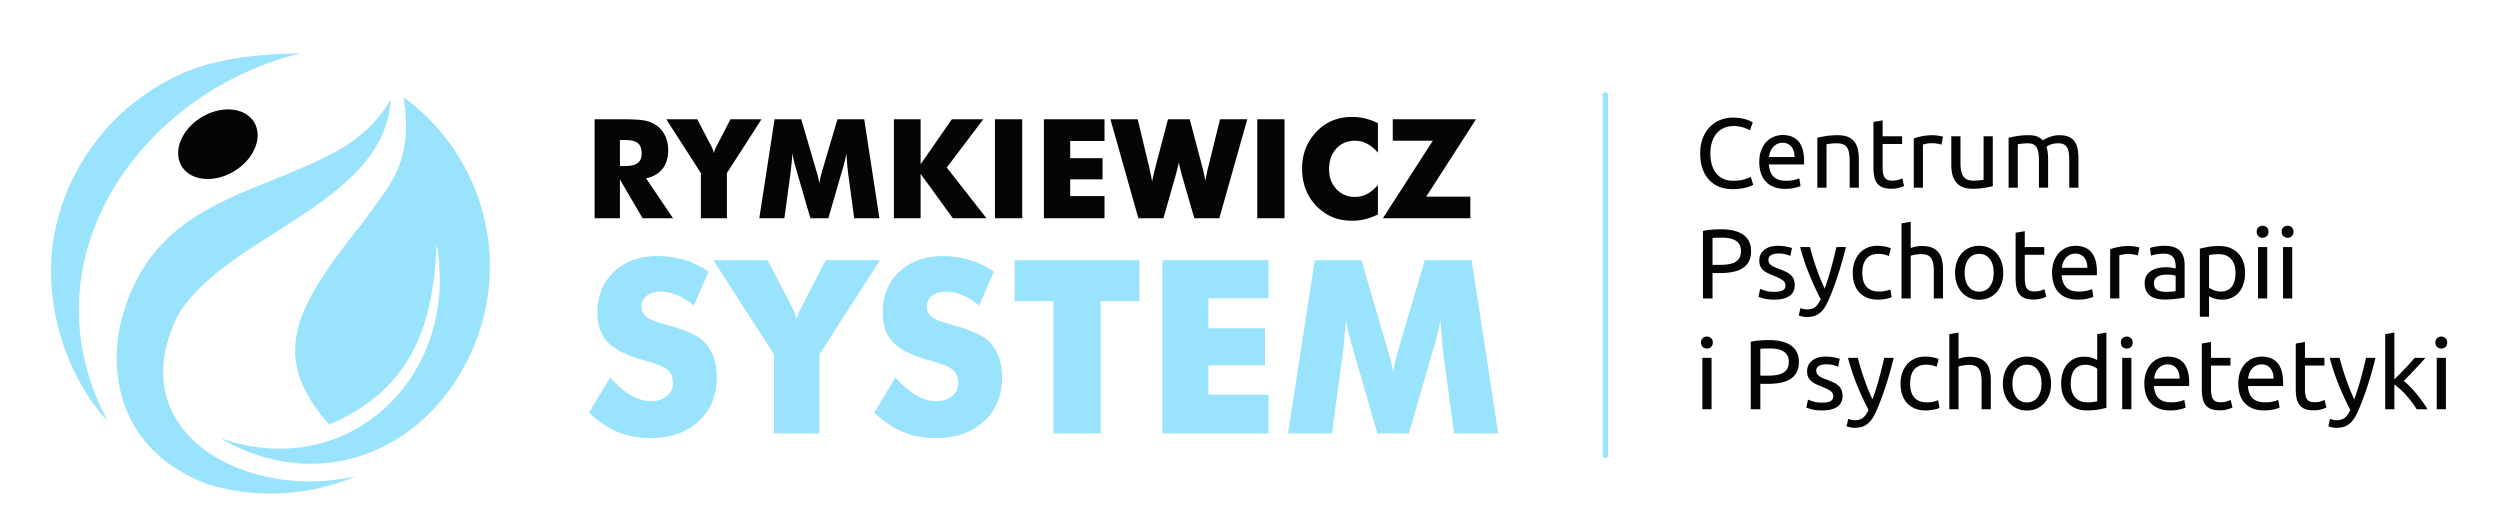 Rymkiewicz system